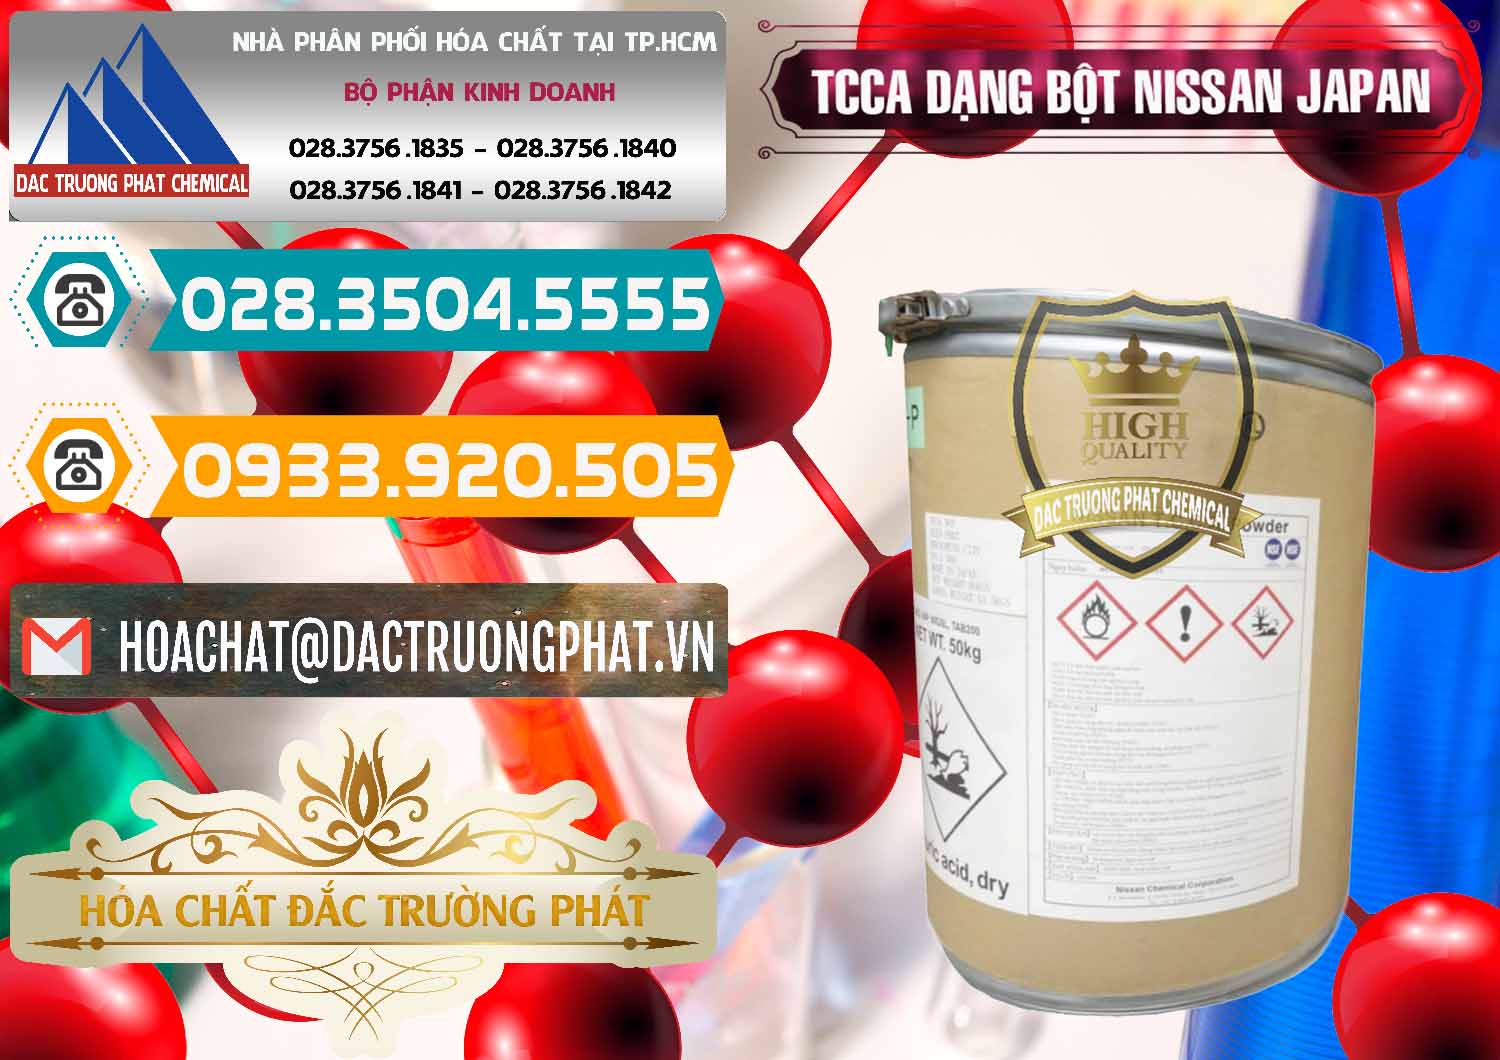 Bán ( cung cấp ) TCCA - Acid Trichloroisocyanuric 90% Dạng Bột Nissan Nhật Bản Japan - 0375 - Nhà cung cấp và bán hóa chất tại TP.HCM - congtyhoachat.vn